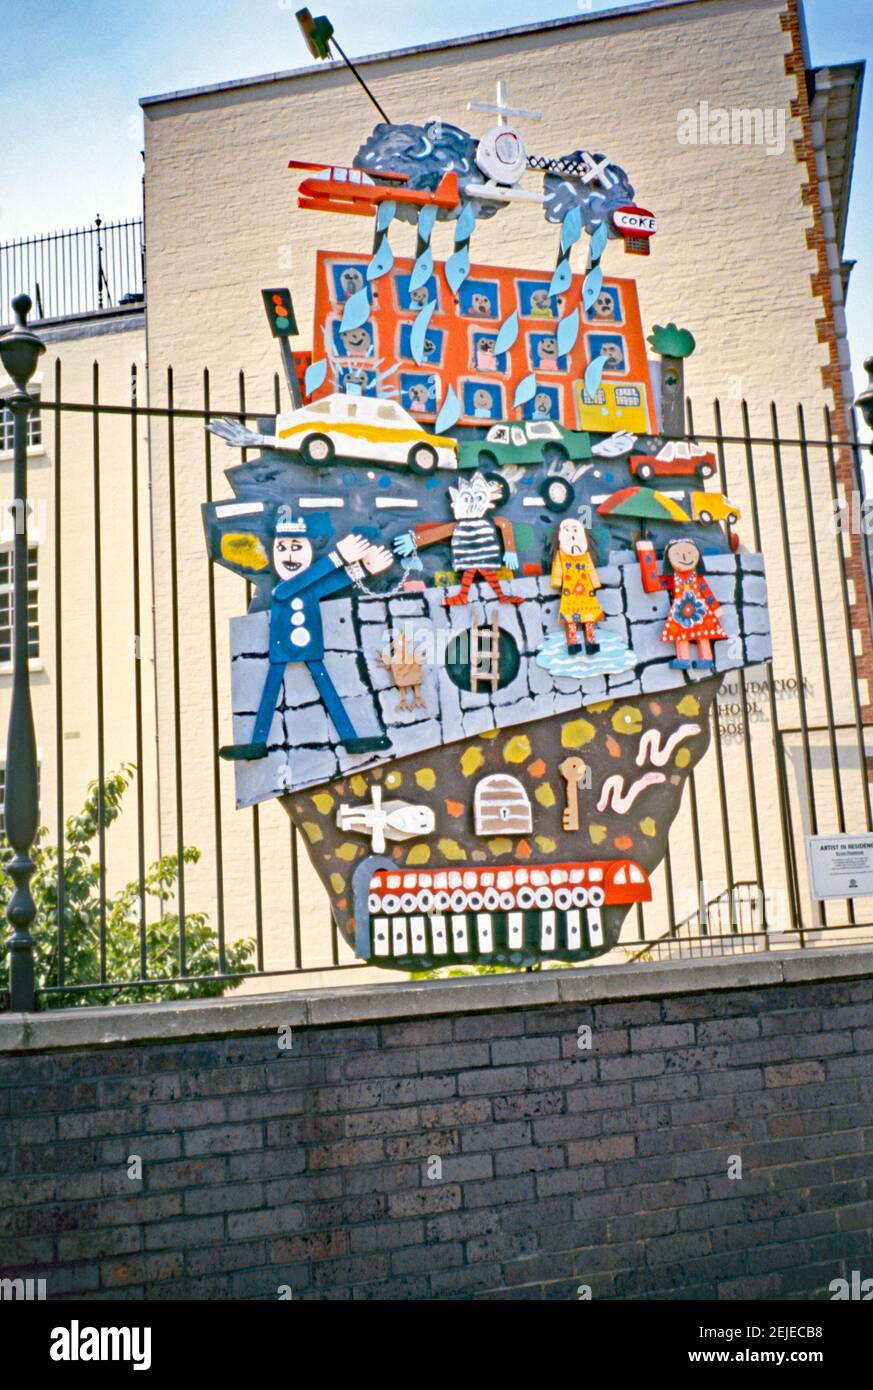 Une sculpture de relief colorée de 1993 créée par Kevin Harrison, attachée aux rails à l'extérieur de l'école primaire de la Fondation John Cass (maintenant l'école Aldgate), St James's passage, Duke's place, Londres, EC3, Londres, Angleterre, Royaume-Uni 1993. L'assemblage comprenait des œuvres d'art produites par les écoliers – Harrison était artiste en résidence à l'école à l'époque. Cette œuvre faisait partie de l’« Art in the City » de 1993 et visait à faire de la sculpture une place parmi les espaces verts et l’architecture distinctive de la City de Londres. Kevin Harrison (1953 ans) est un artiste britannique établi avec un studio dans le quartier londonien de Bow. Banque D'Images